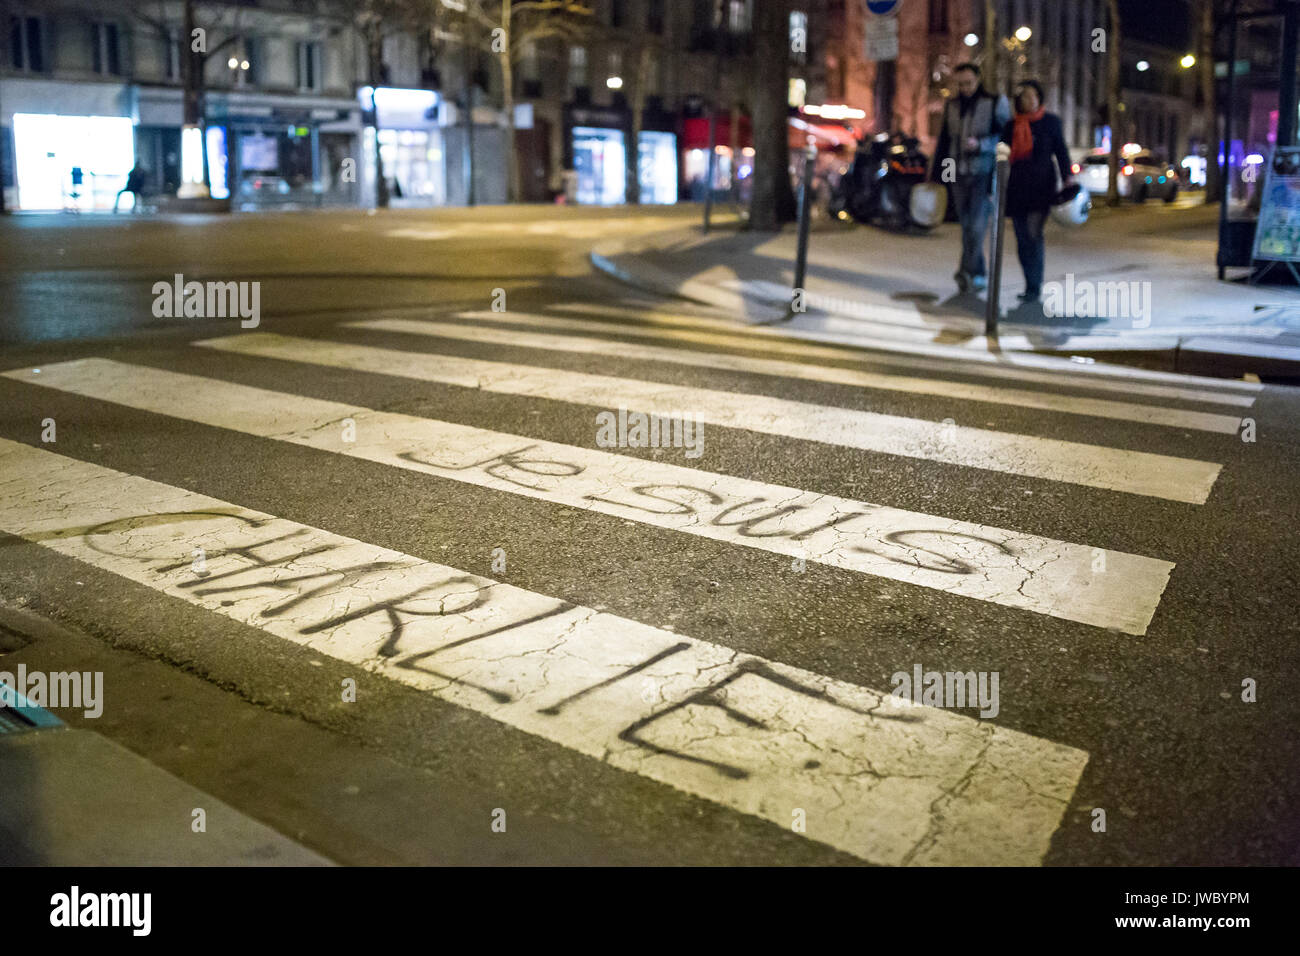 Je suis Charlie auf einem Zebrastreifen geschrieben. Hommage an die Opfer von Charlie Hebdo Tötung in Paris der 7. Januar 2015. Stockfoto